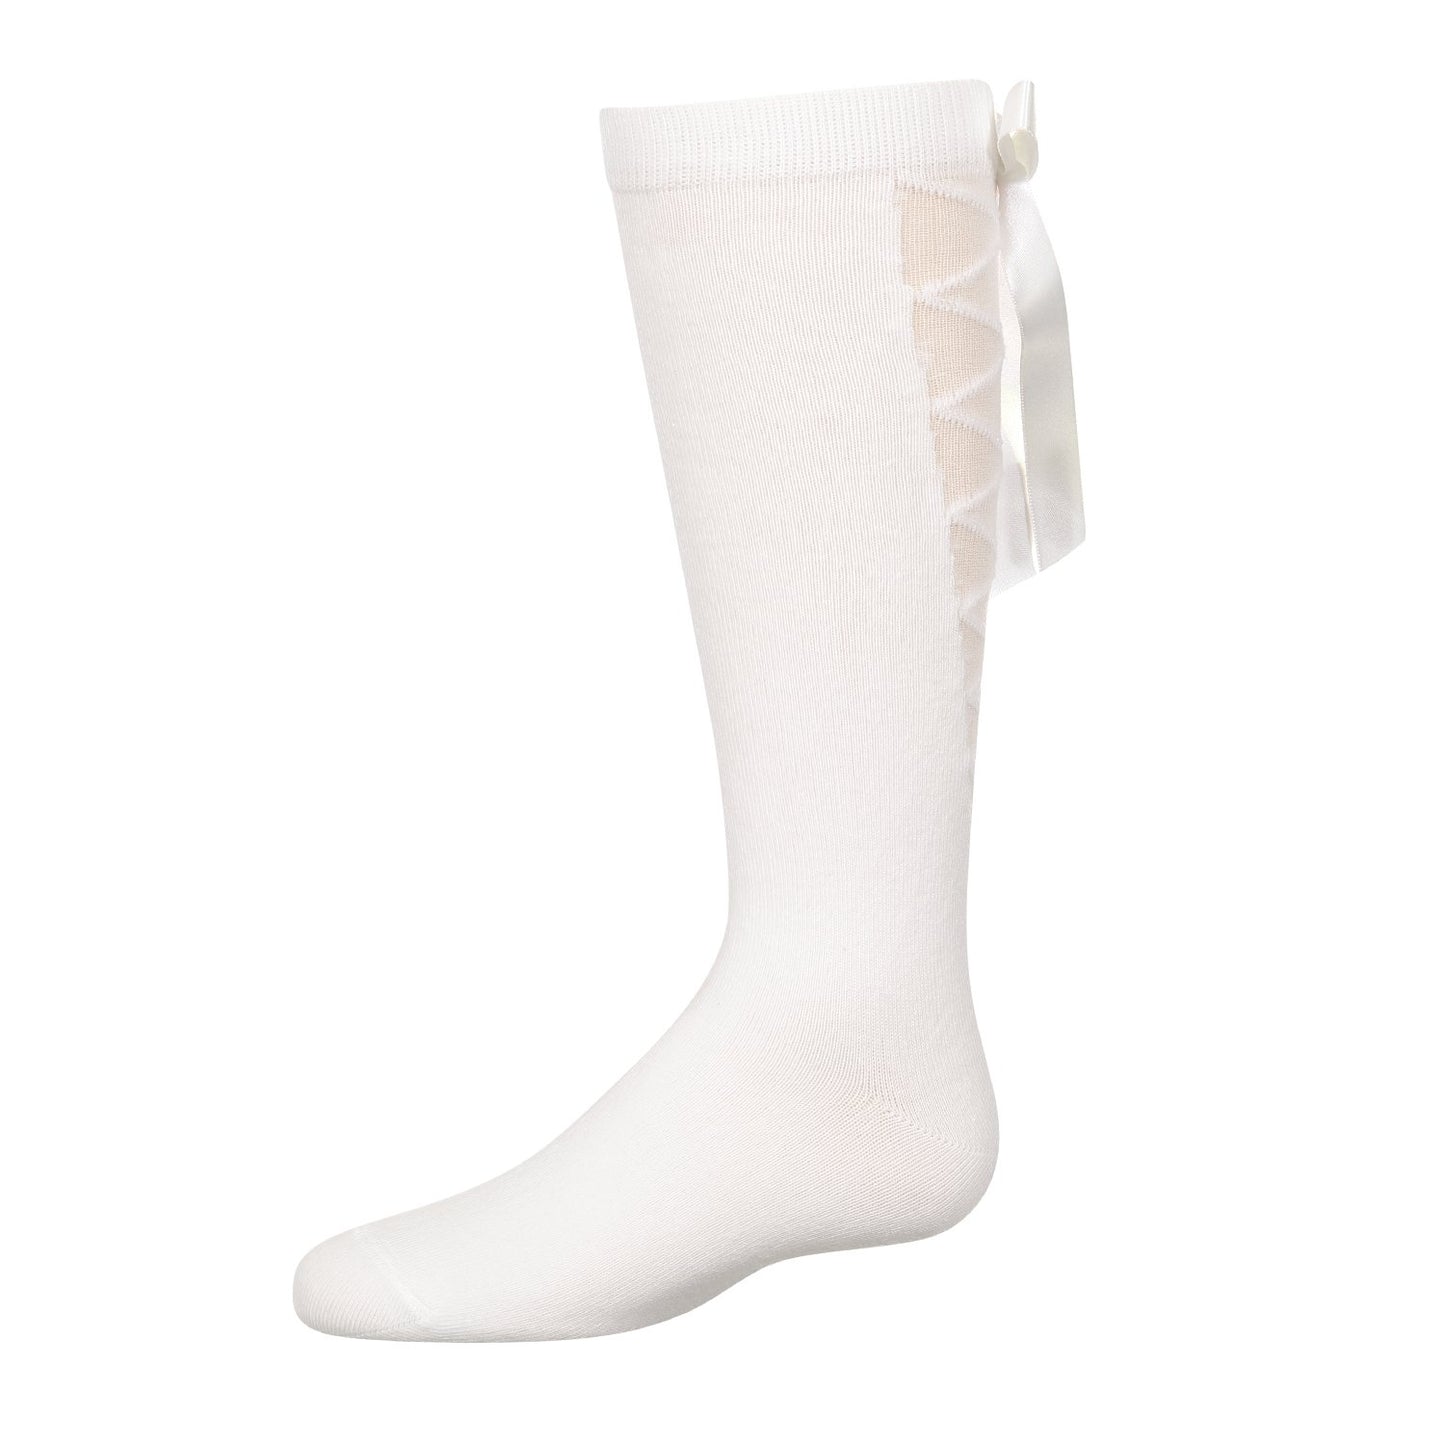 jrp socks white lace up knee high sock